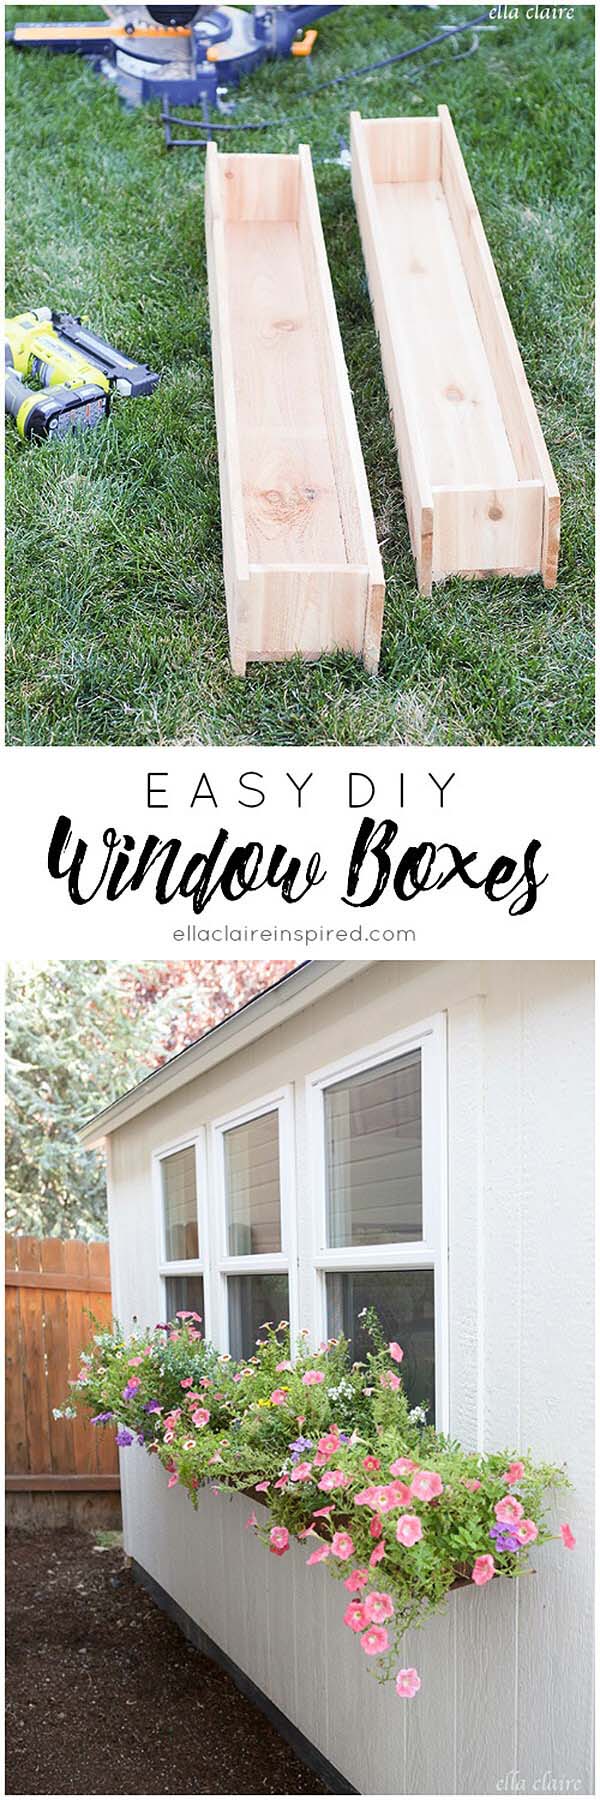 Easy DIY Wooden Window Boxes #diy #backyard #garden #projects #decorhomeideas